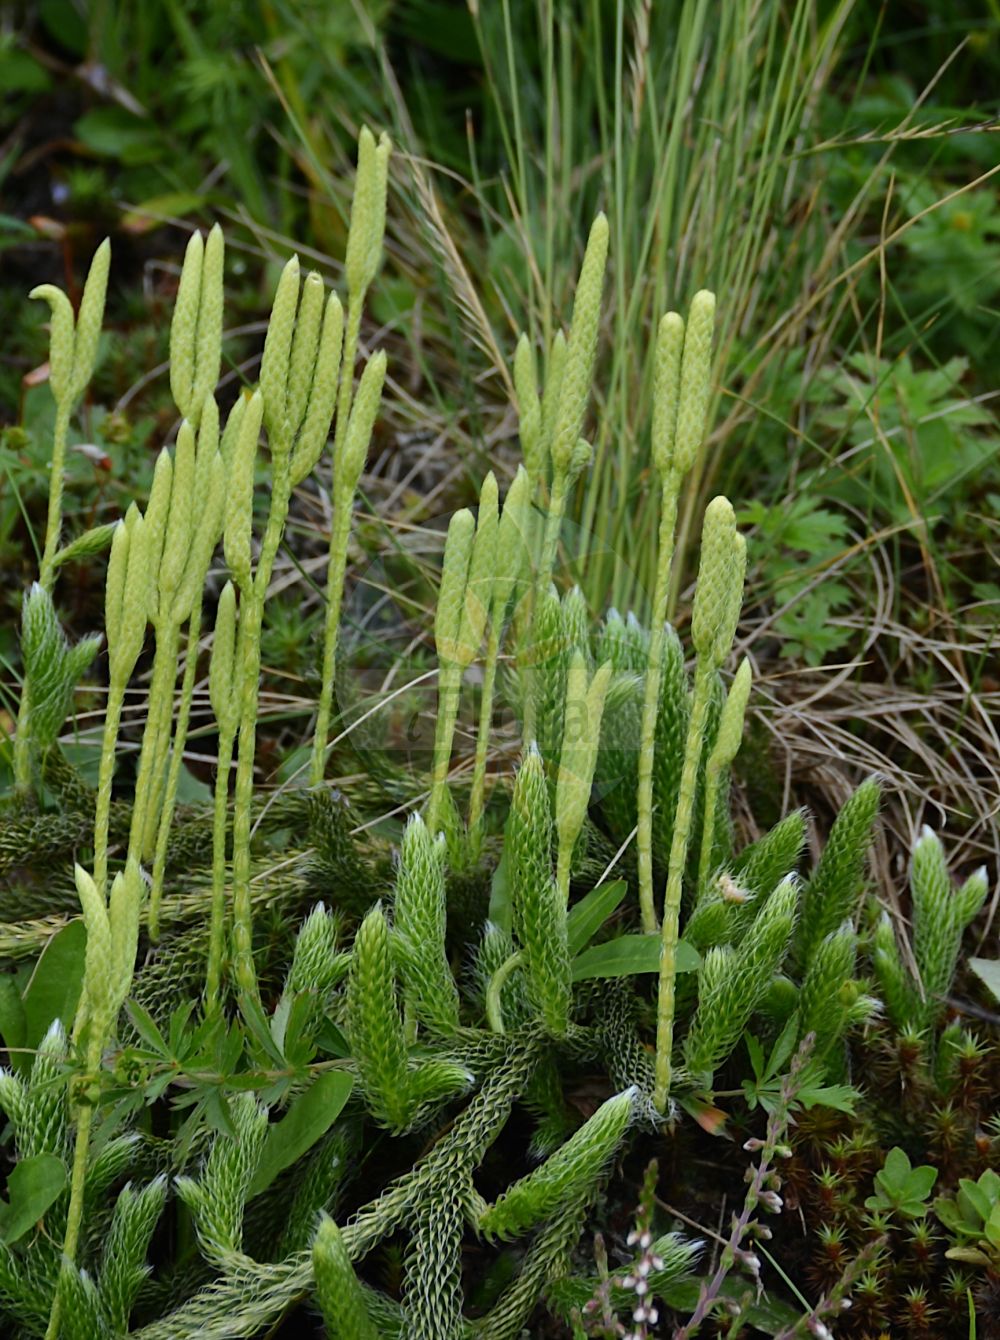 Foto von Lycopodium clavatum (Keulen-Bärlapp - Stag's-horn Clubmoss). Das Bild zeigt Blatt, Mikrophyl und Spore. Das Foto wurde in Fügenberg, Tirol, Österreich, Alpen, Zillertal aufgenommen. ---- Photo of Lycopodium clavatum (Keulen-Bärlapp - Stag's-horn Clubmoss). The image is showing leaf, microphyll and spore. The picture was taken in Fuegenberg, Tyrol, Austria, Alps, Zillertal.(Lycopodium clavatum,Keulen-Bärlapp,Stag's-horn Clubmoss,Lycopodium clavatum,Lycopodium lagopus,Keulen-Baerlapp,Schlangenmoos,Drudenfuss,Wolfsraute,Stag's-horn Clubmoss,Common Clubmoss,One-cone Clubmoss,Running Clubmoss,Ground Pine,Lycopodium,Bärlapp,Clubmoss,Lycopodiaceae,Bärlappgewächse,Clubmoss family,Blatt,Mikrophyl,Spore,leaf,microphyll,spore)